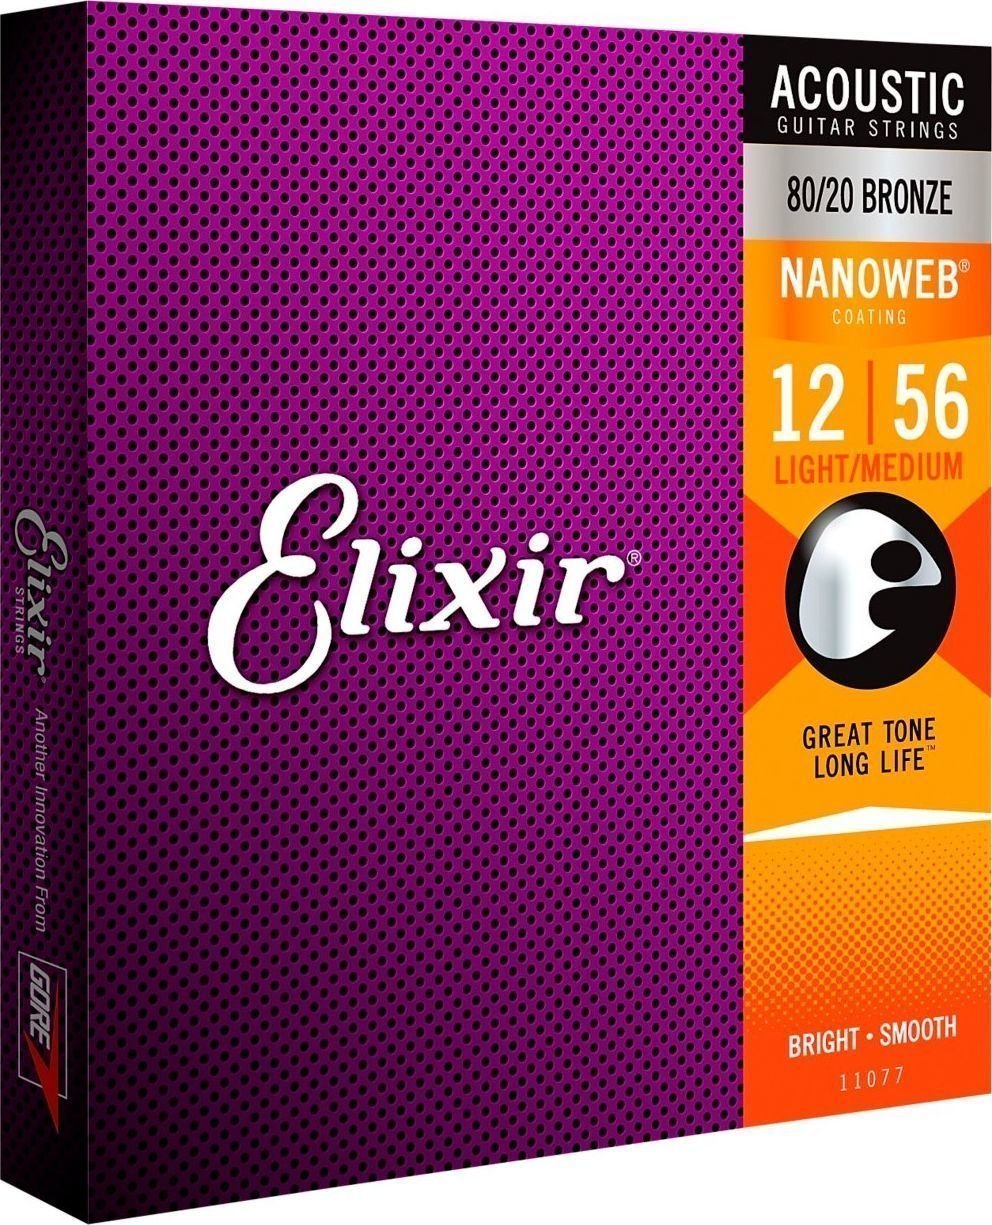 Struny pre akustickú gitaru Elixir 11077 Nanoweb 12-56